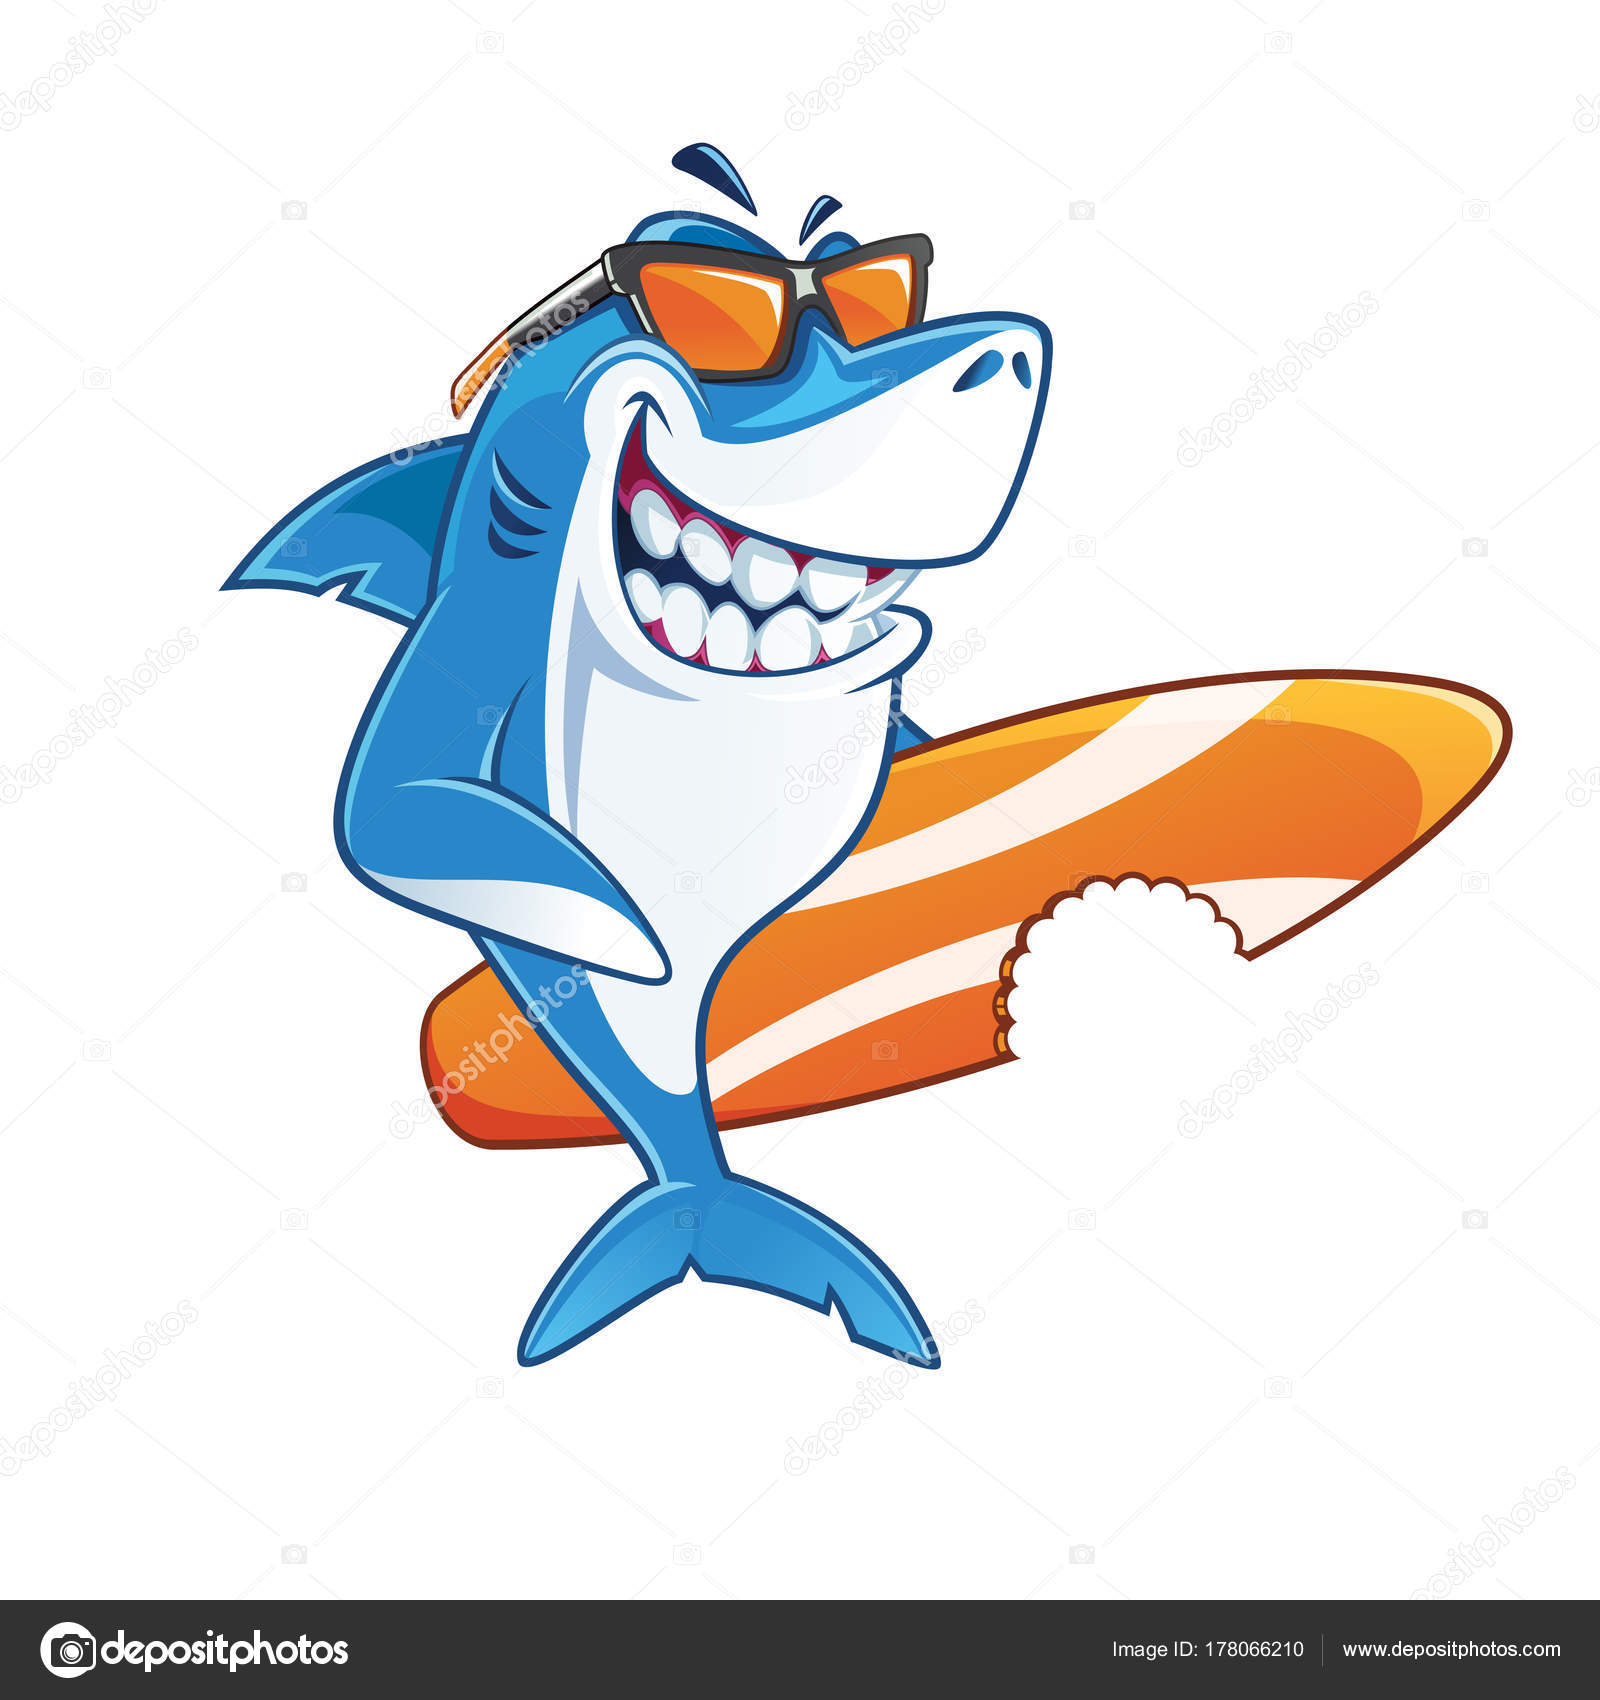 Download Shark With Sunglasses Svg | Les Baux-de-Provence